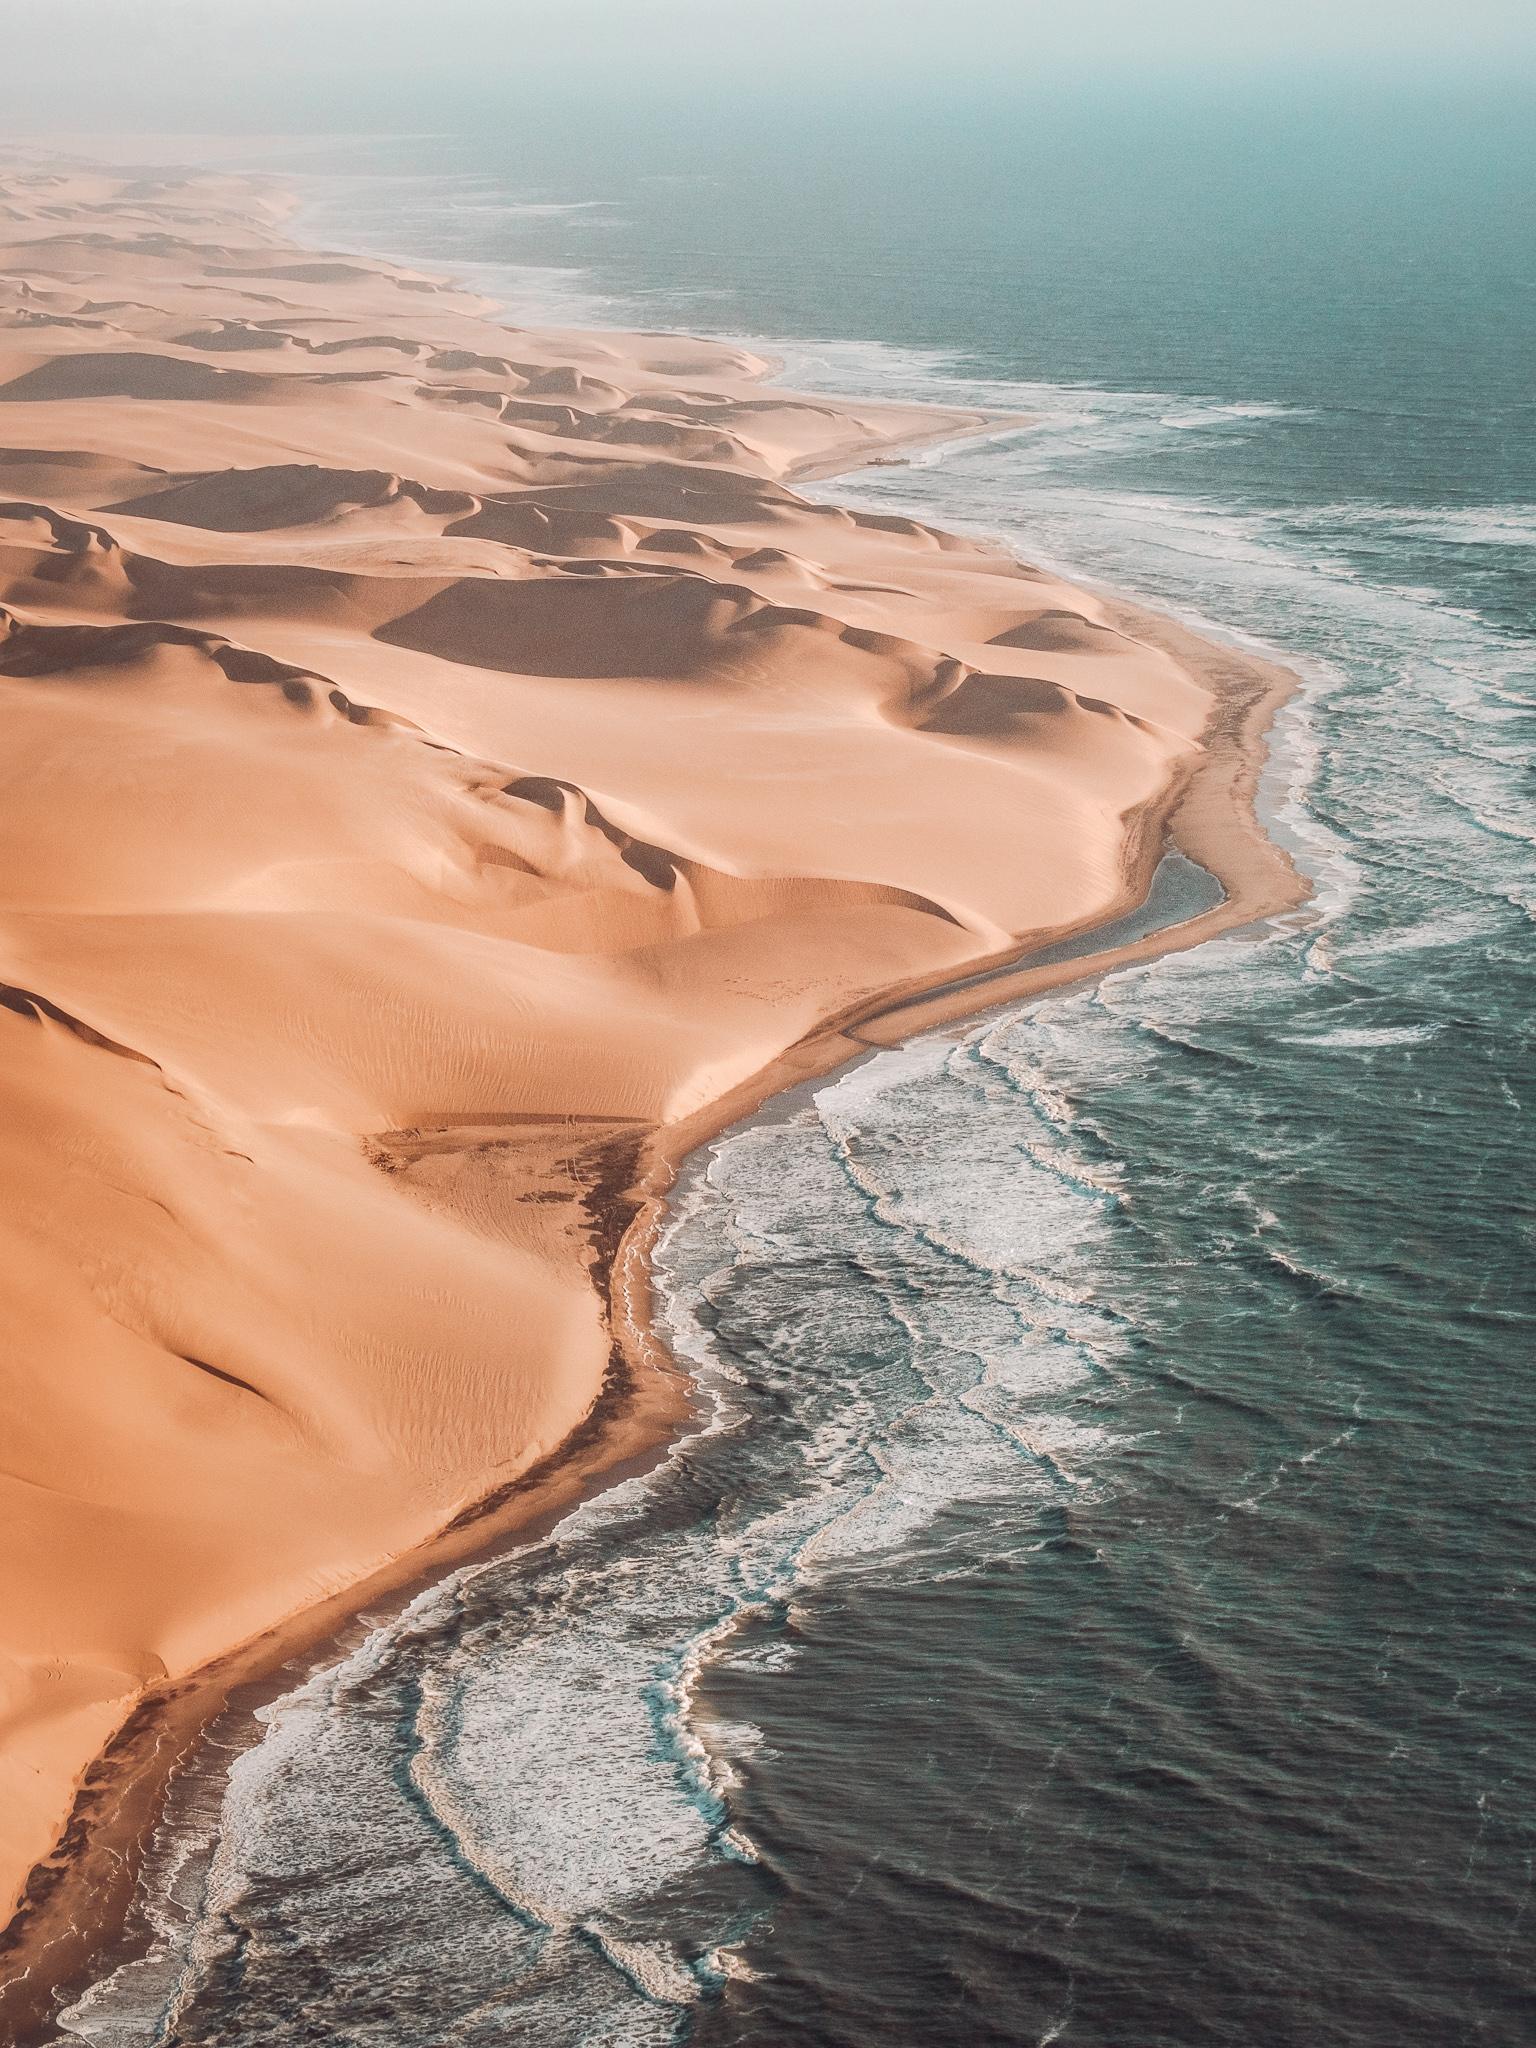 large sandy dunes touching the coastline